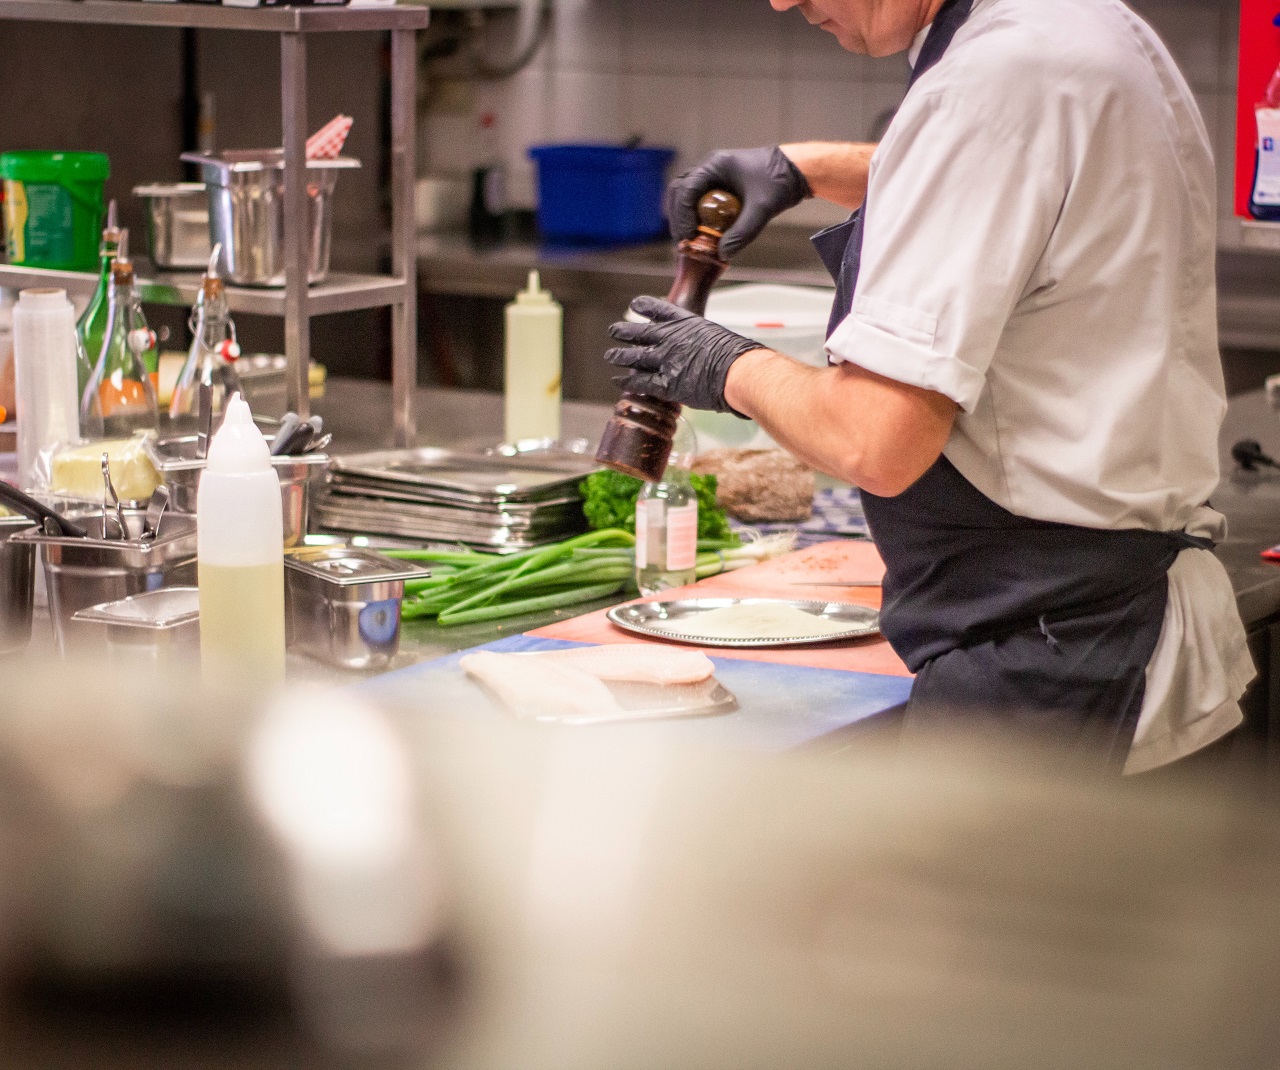 Jakie udogodnienia pomogą przyspieszyć pracę na kuchni w lokalach gastronomicznych?